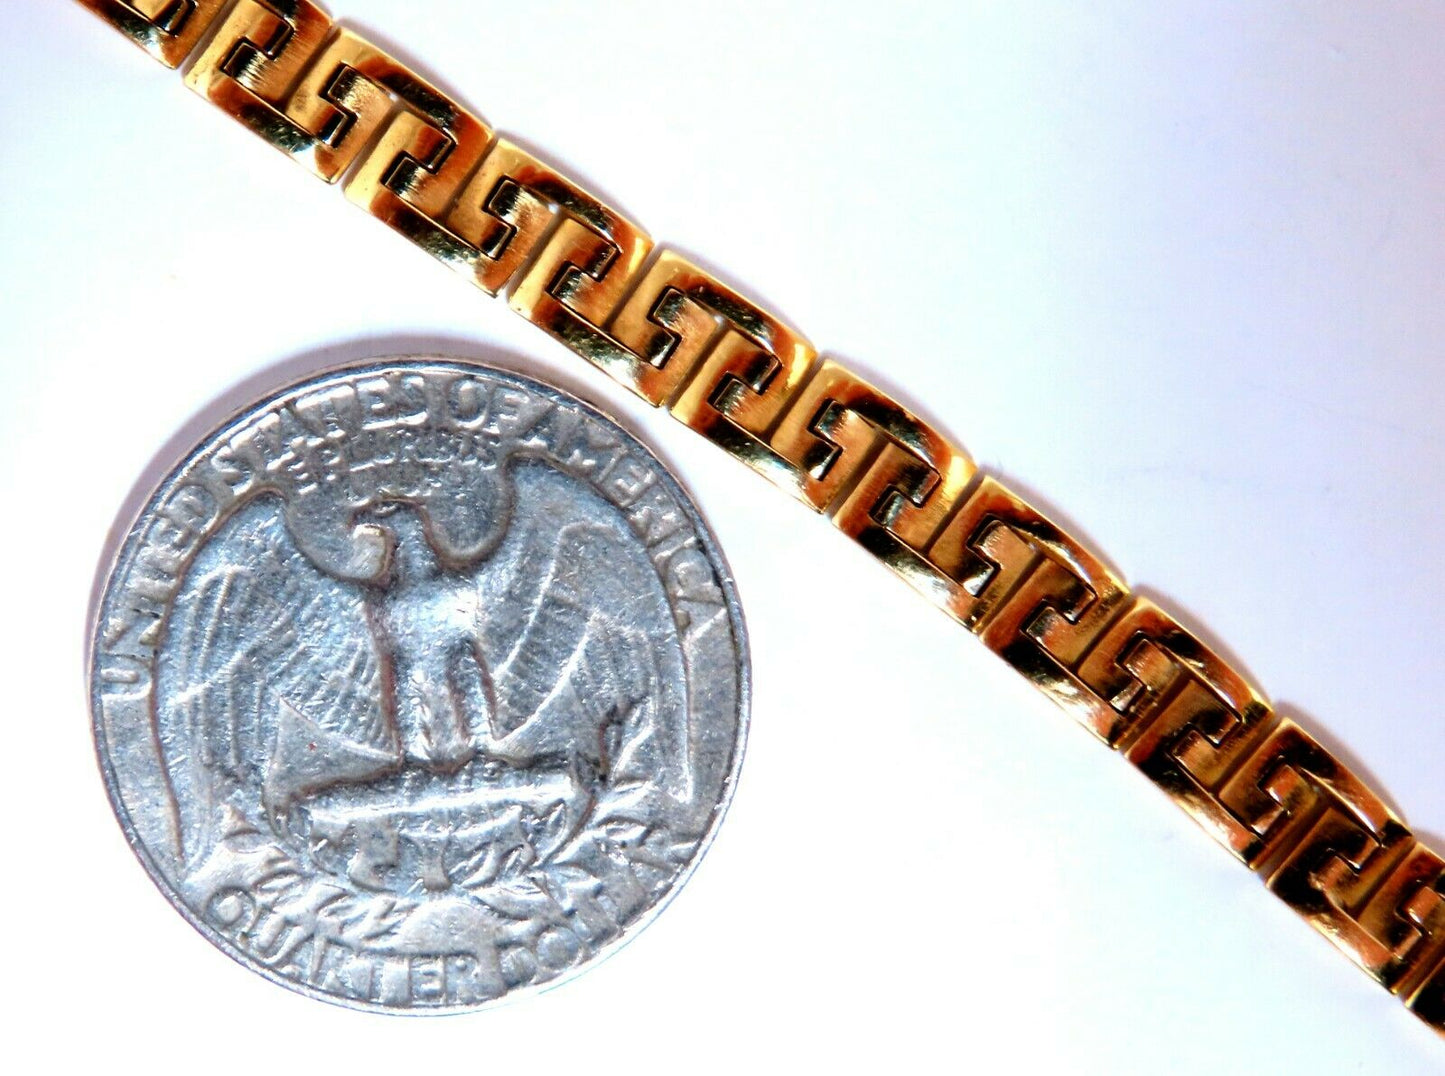 Greek Iconic Pattern Link Bracelet 18kt 7.5 inch